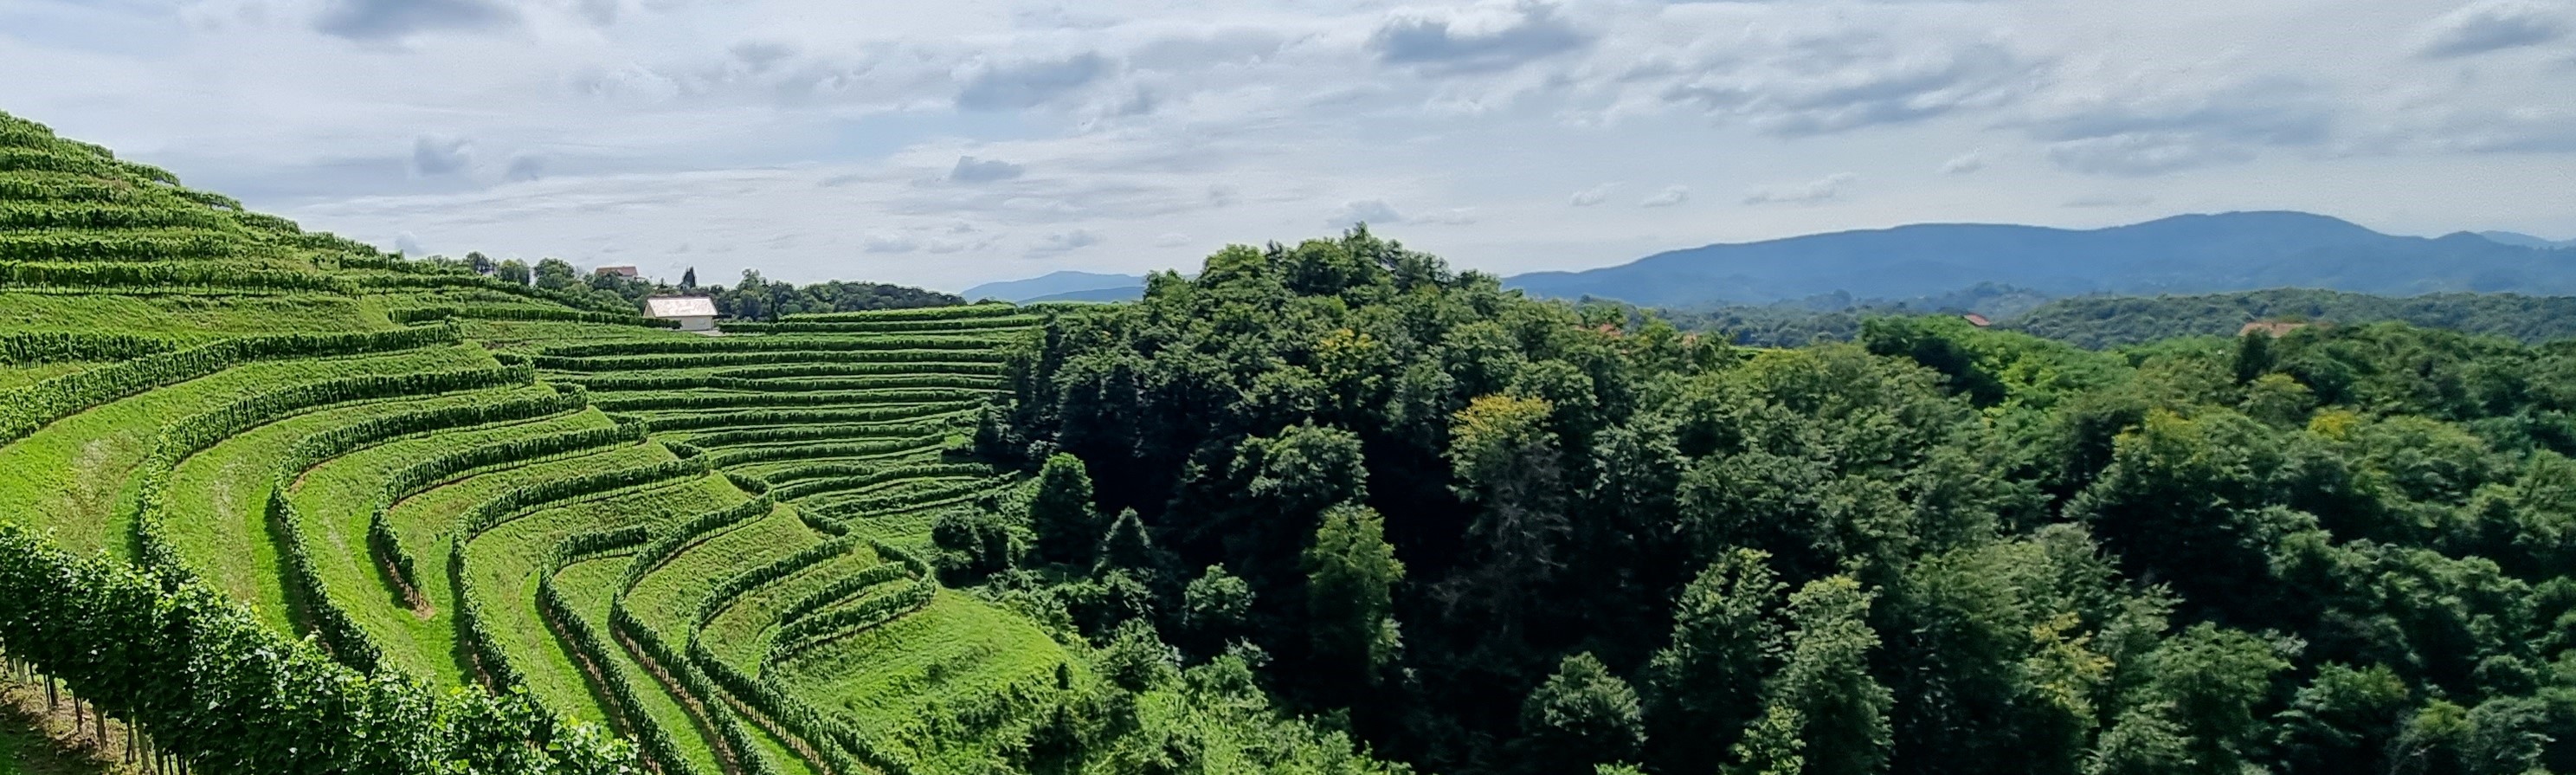 vinorodna pokrajina